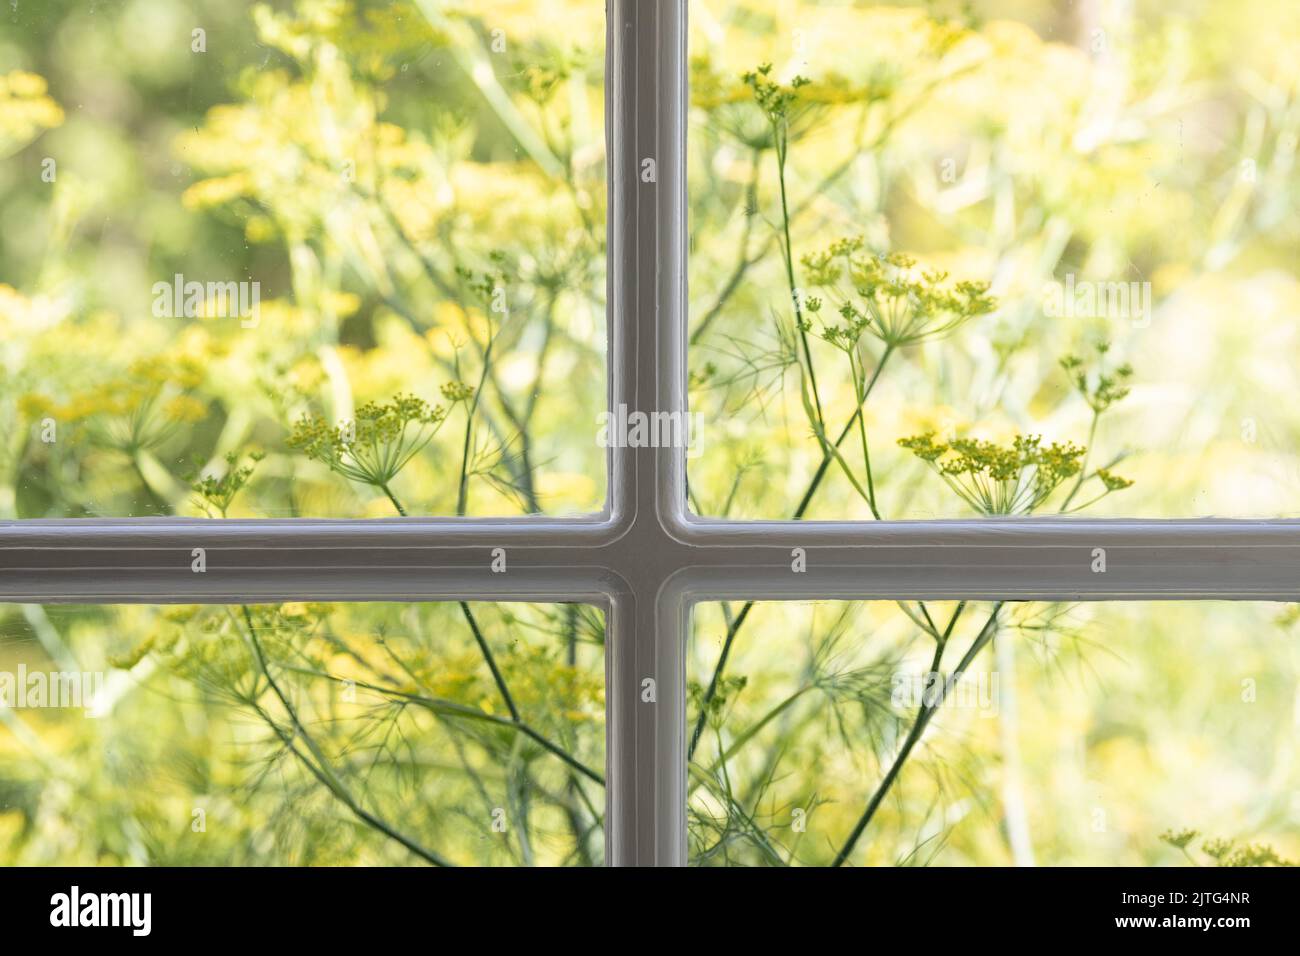 Zierfenchel durch das Hausfenster gesehen - uk Stockfoto